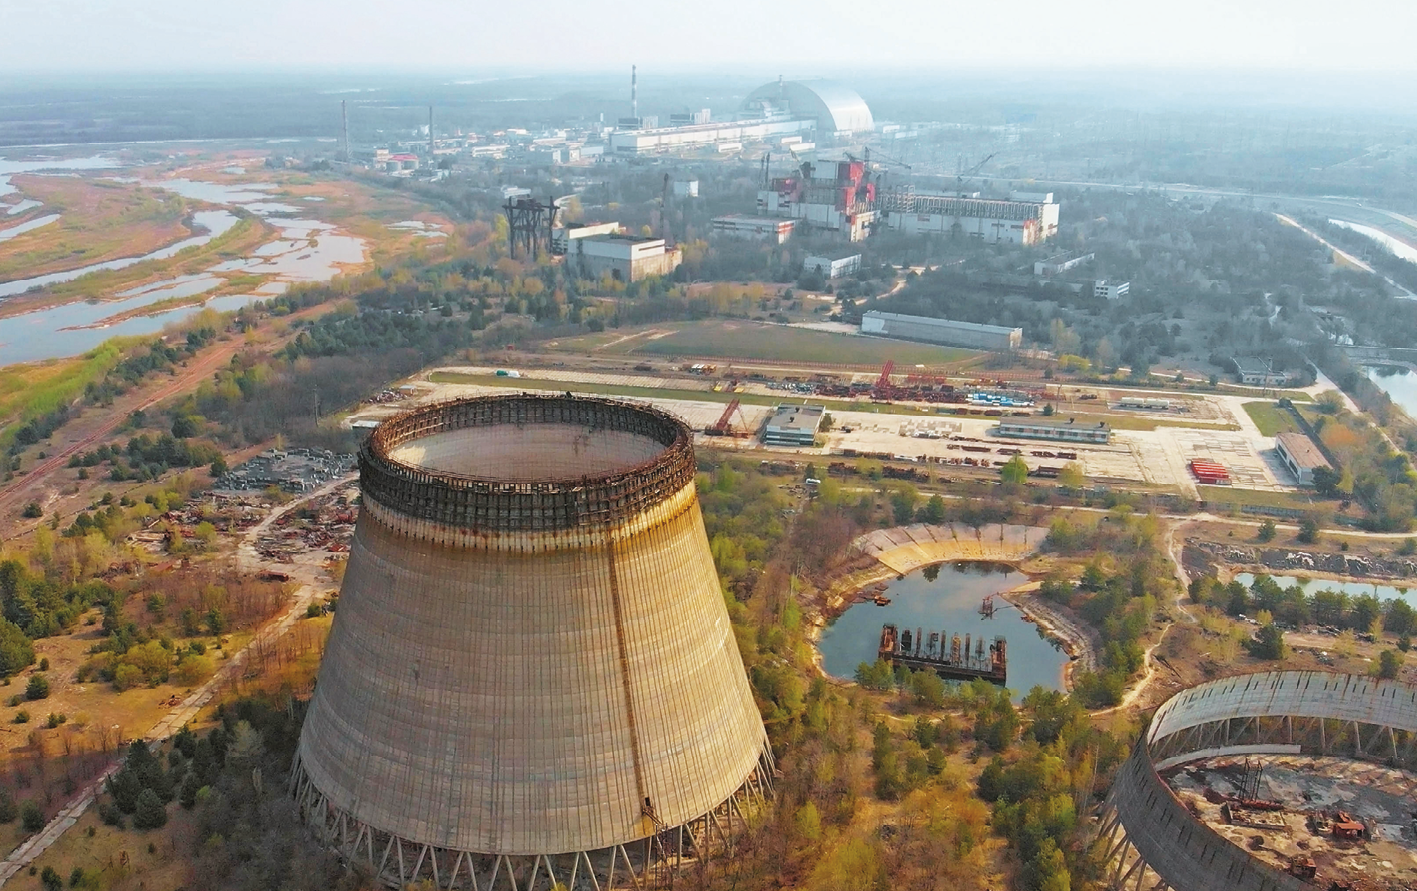 Fotografia aérea. Vista da Usina nuclear de Chernobyl. À frente, grande construção cilíndrica. Ao redor, vegetação. À direita, um tanque de água. Ao fundo, edifícios da usina e, à esquerda, um rio parcialmente seco.